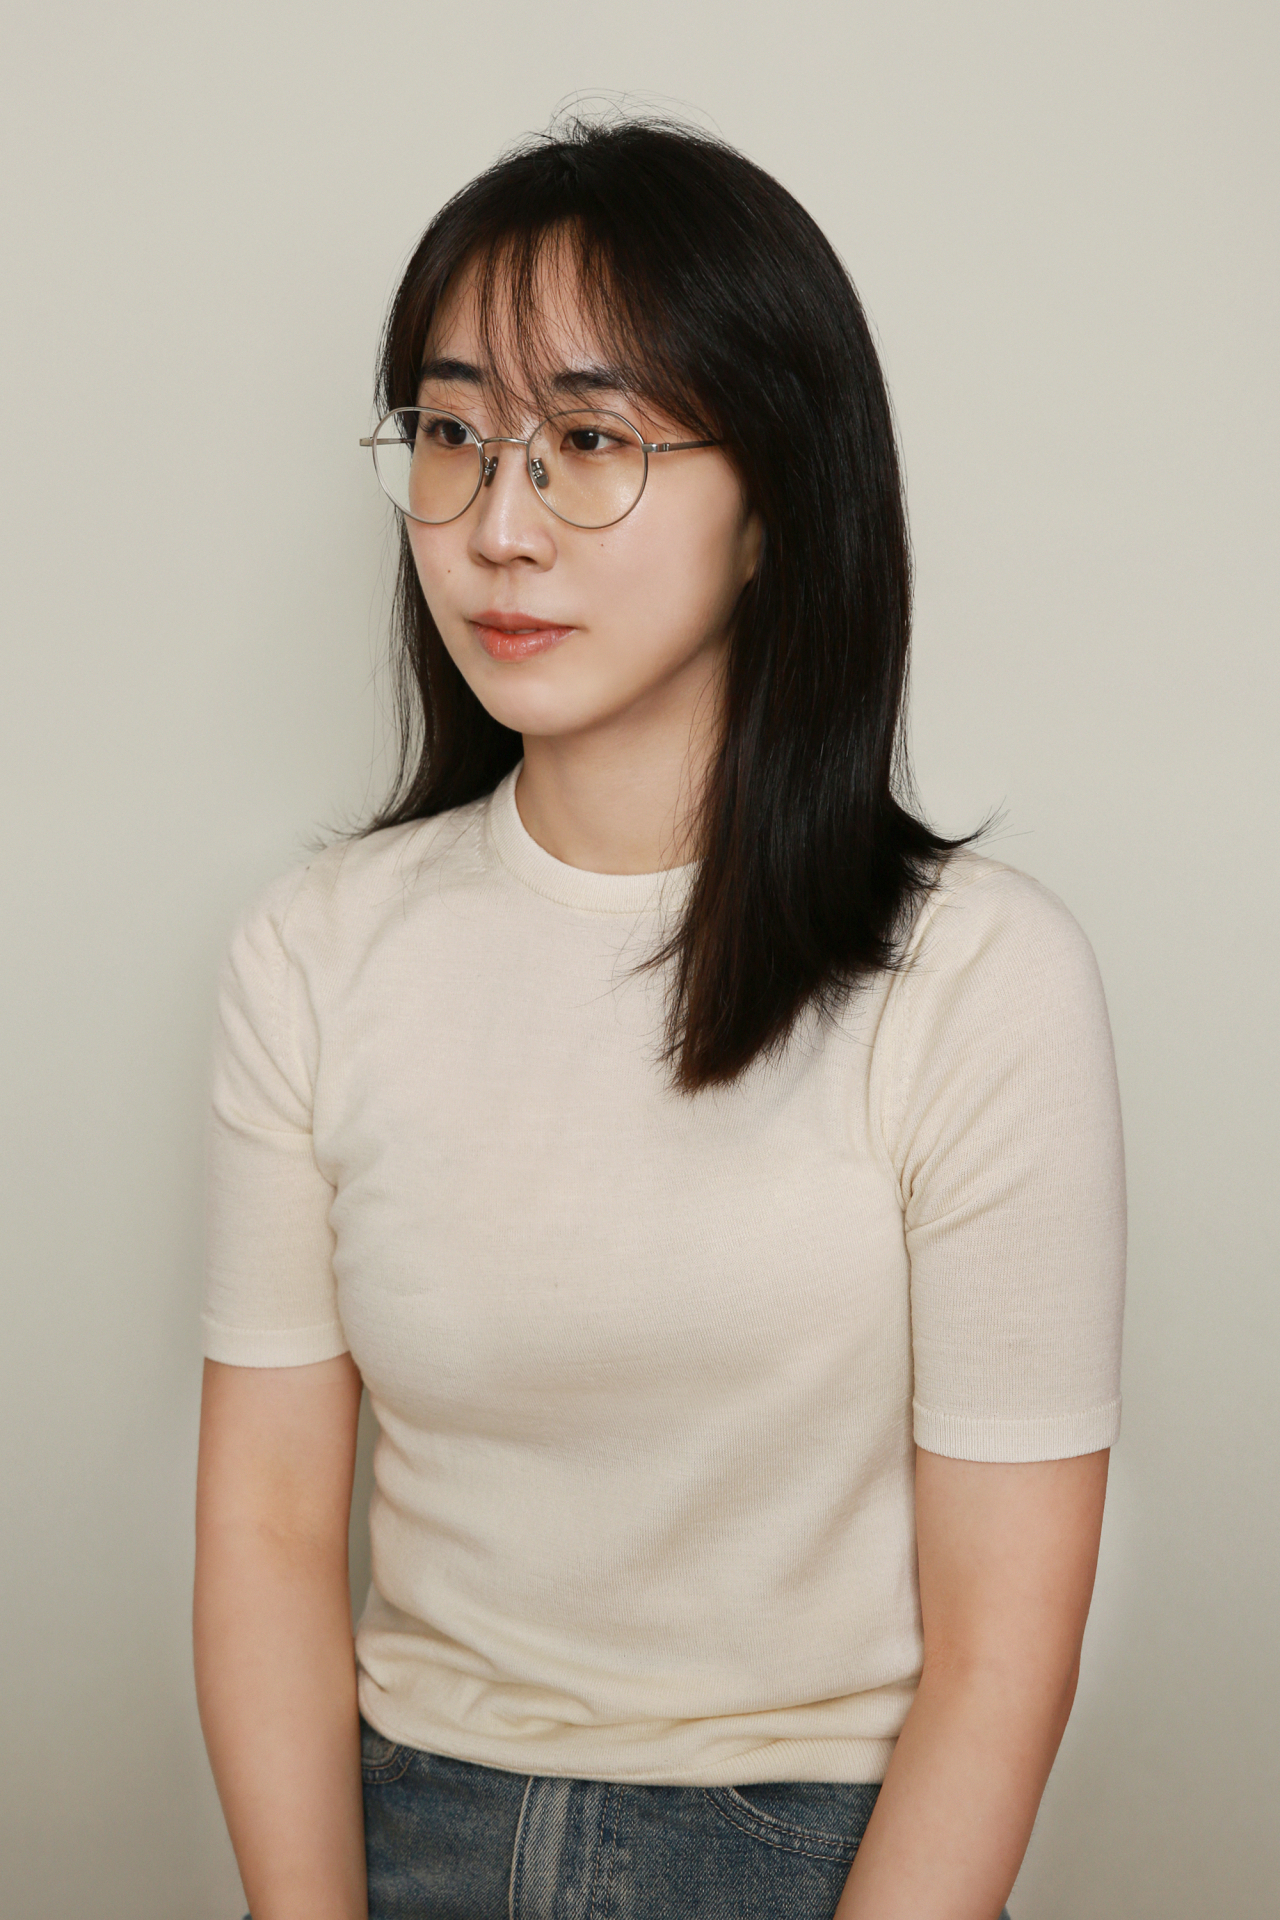 Director Kim Da-min (Pancinema)